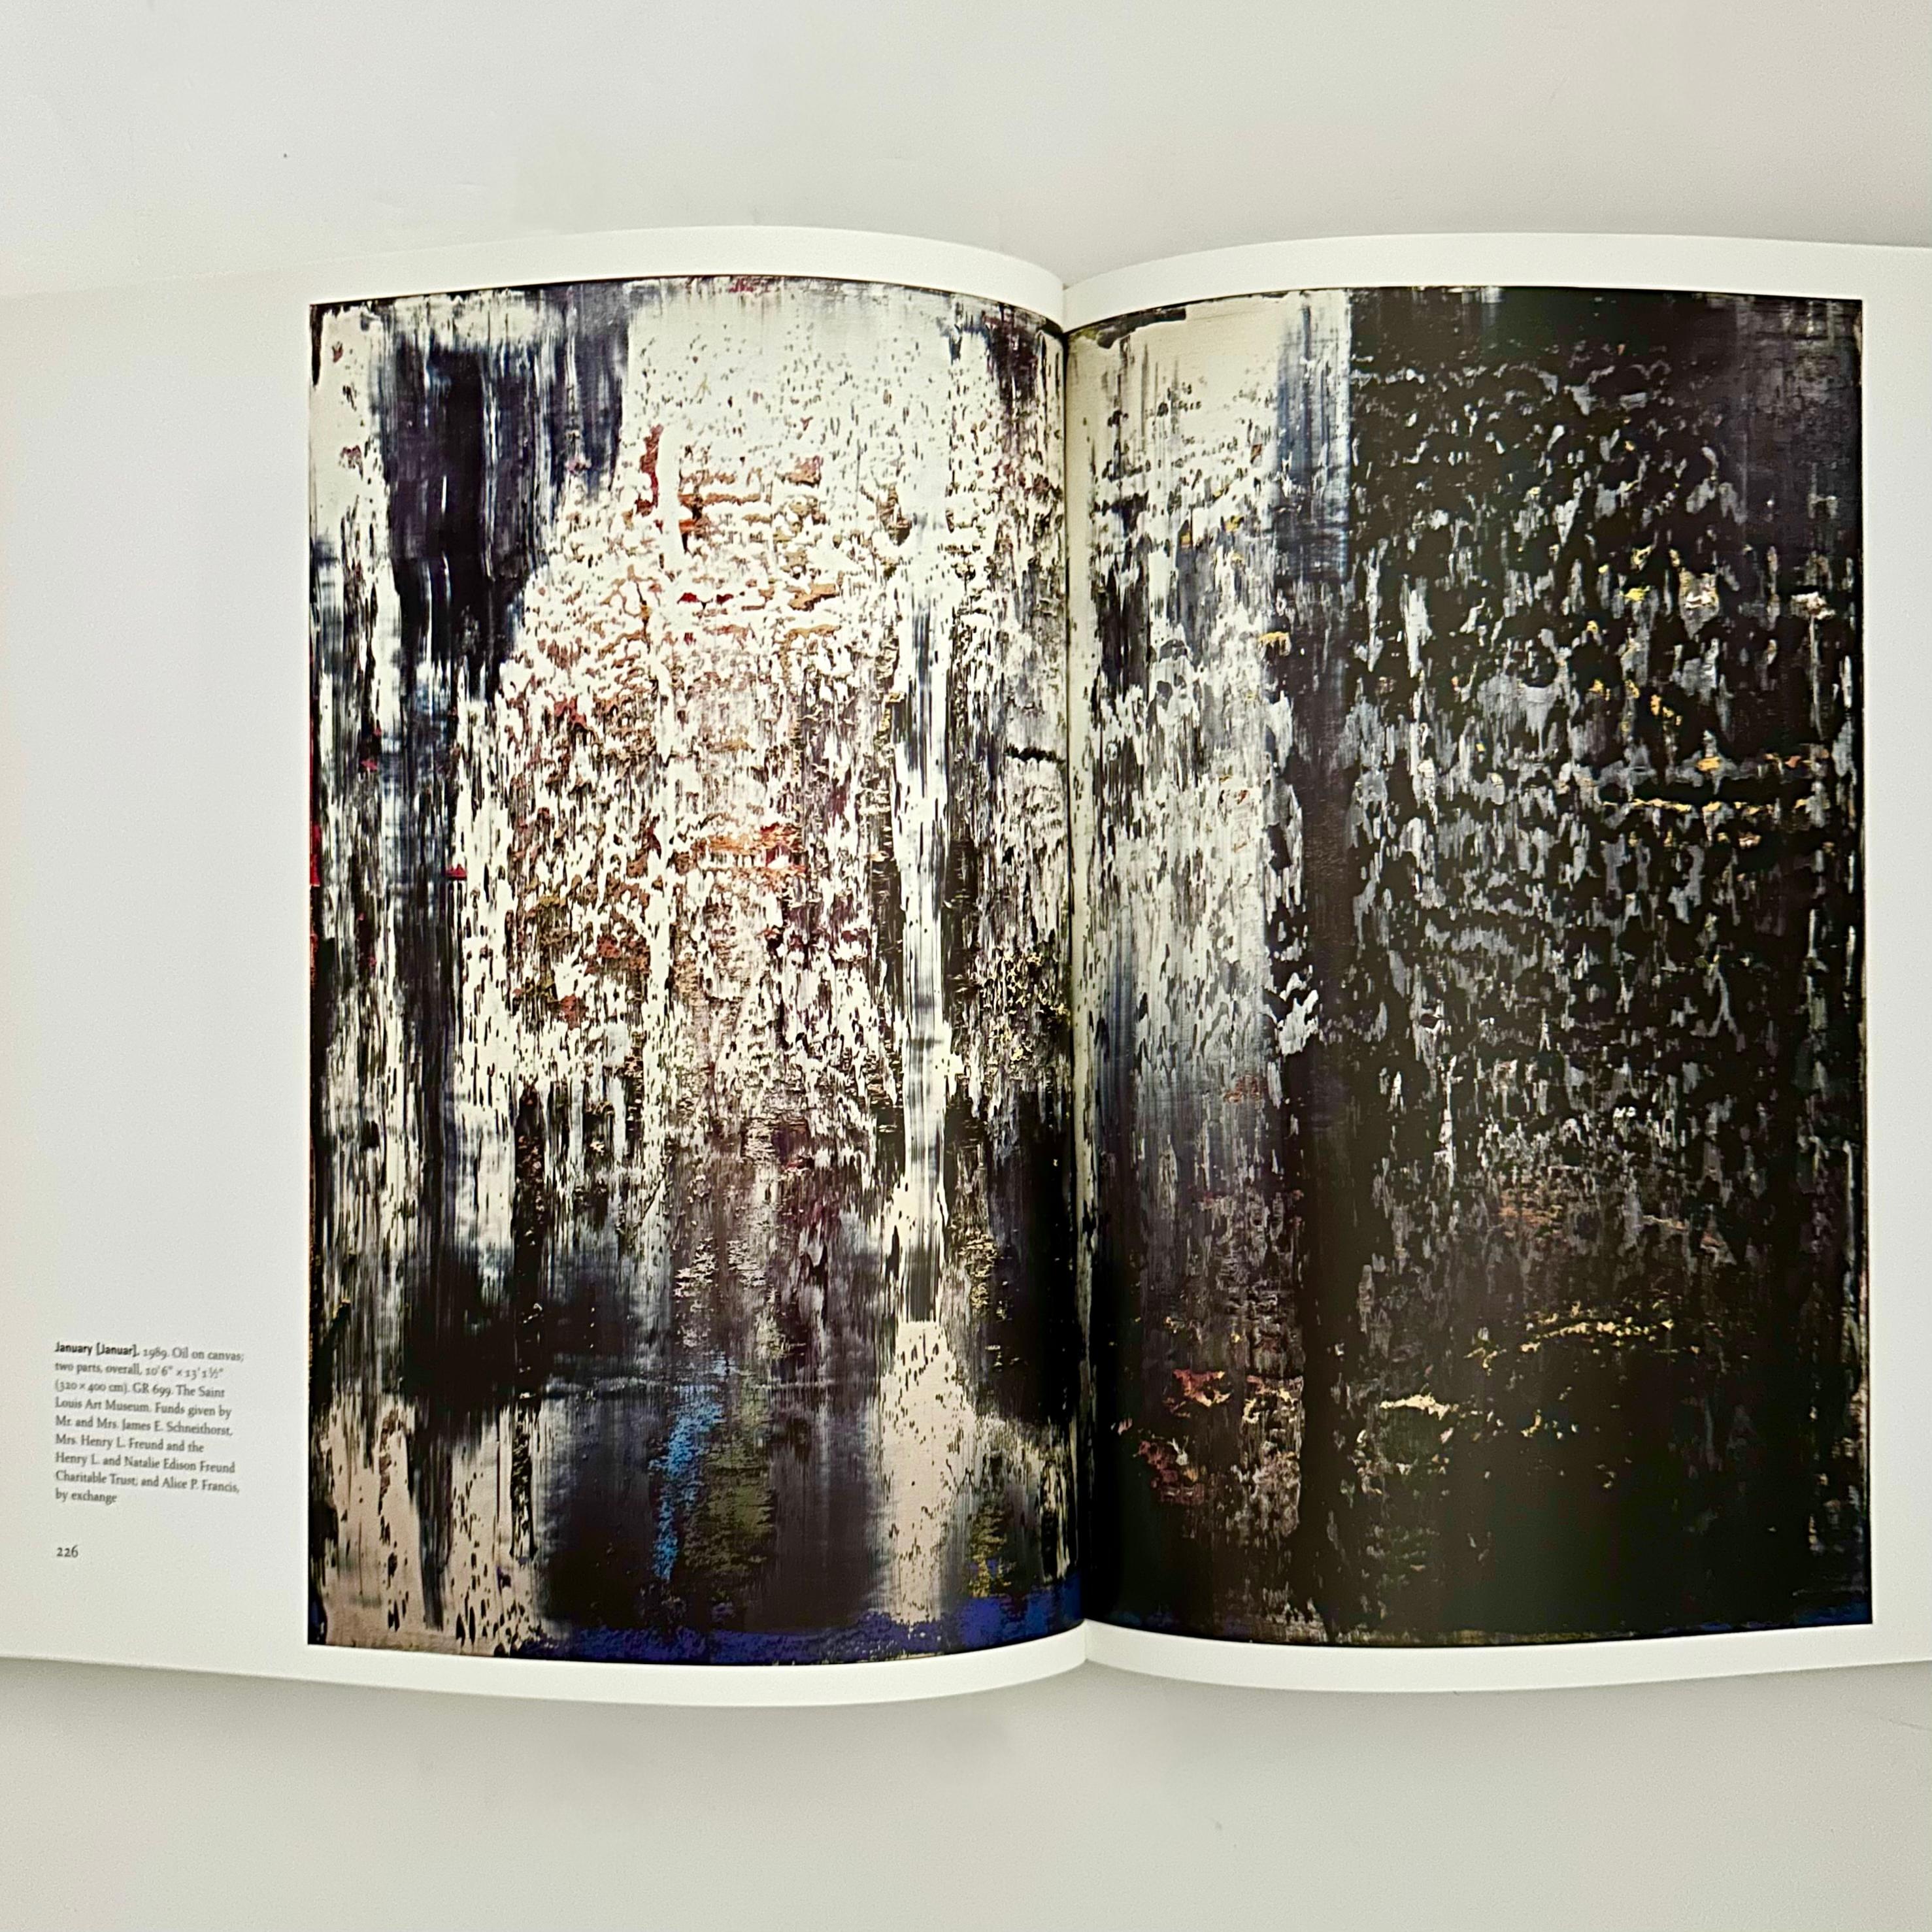 Publié par le MoMA, 1ère édition, New York, 2002. Livre relié avec texte en anglais.

Près de 300 planches en couleurs et en noir et blanc.

Du réalisme figuratif austère des années 1960, basé sur la photographie, à l'abstraction gestuelle aux